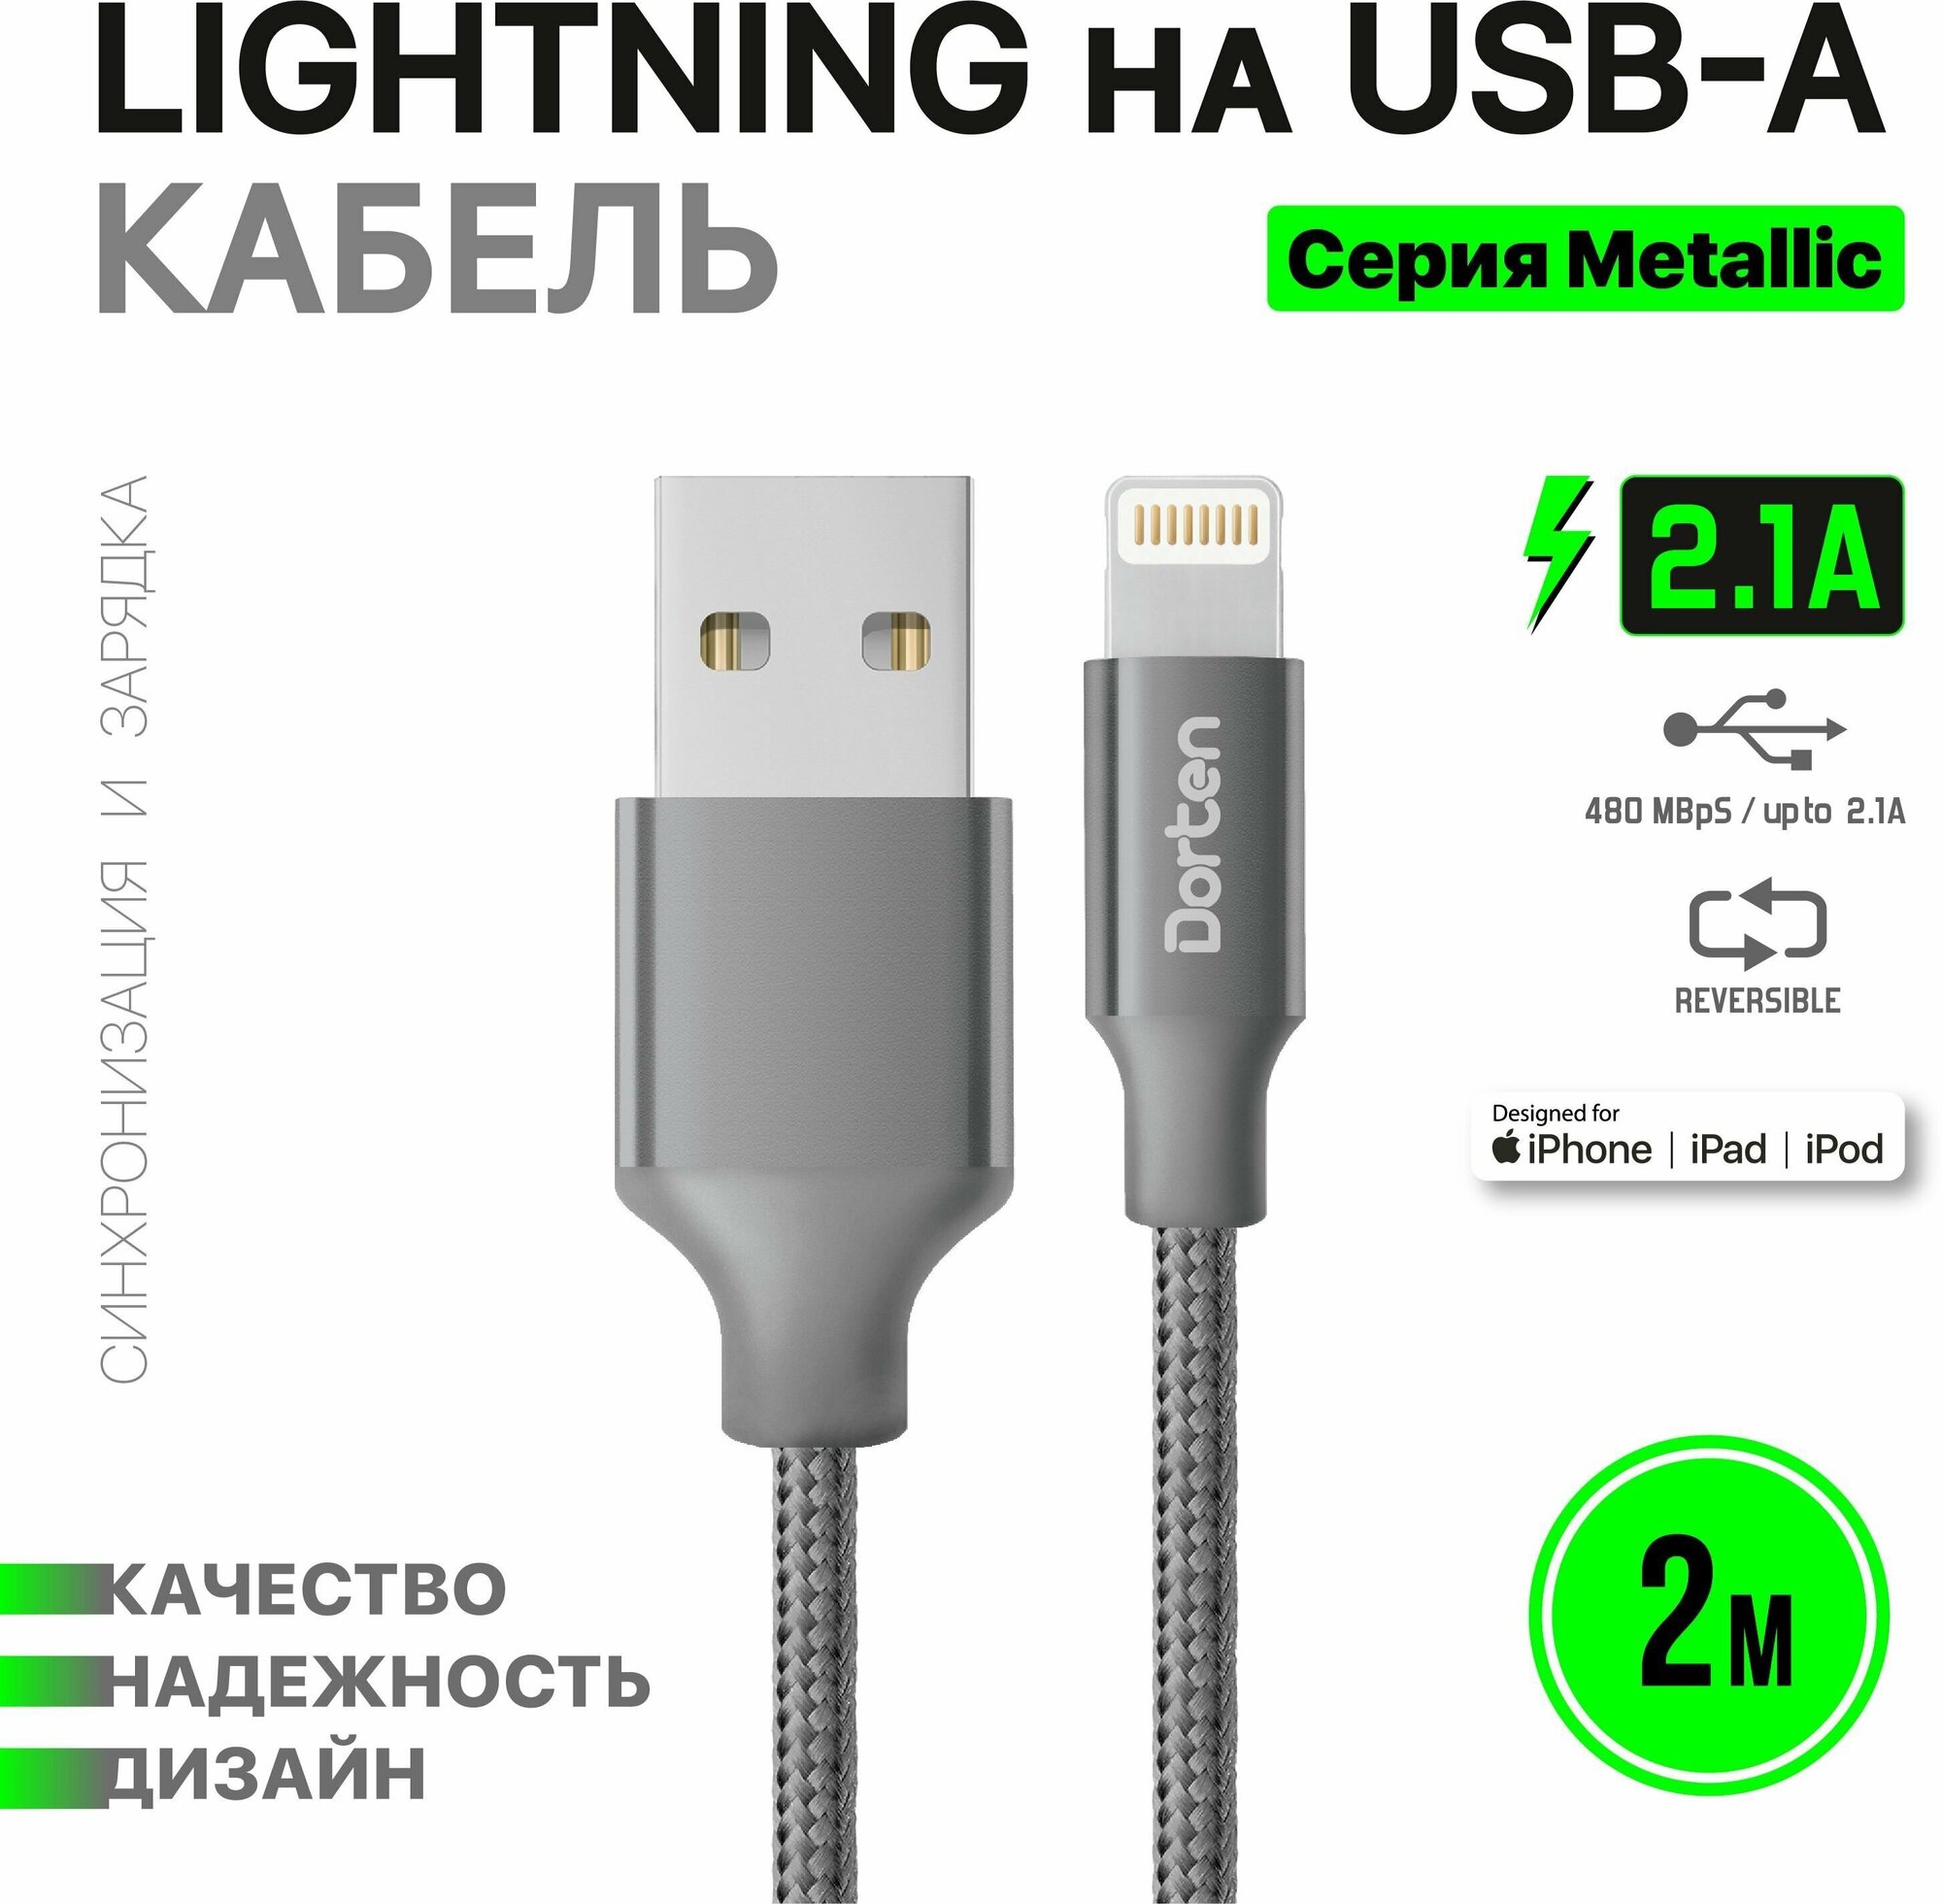 Кабель USB для зарядки телефона Dorten Lighting 2 метра: Metallic series провод юсб 2м - Темно-серый